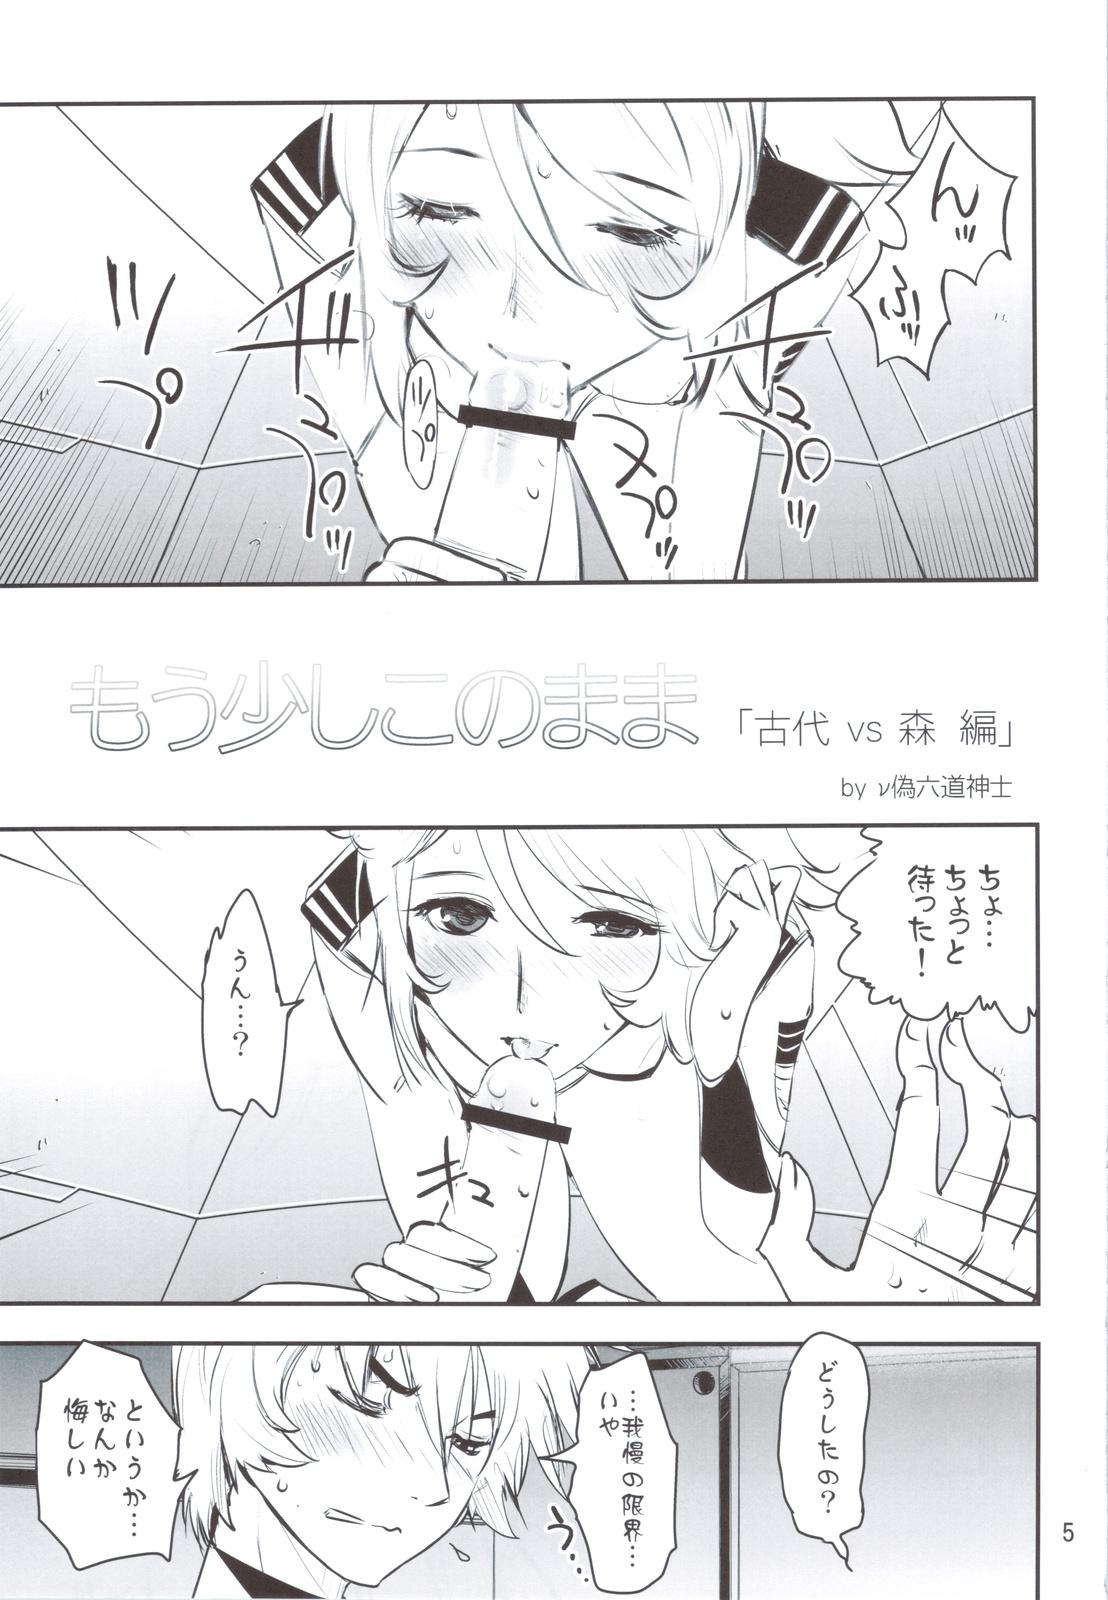 Cam (C83) [Rikudoukan (Rikudou Koushi)] Rikudoujuku Jukuhou [8] + Rikutsuu (Space Battleship Yamato 2199) - Space battleship yamato Backshots - Page 4